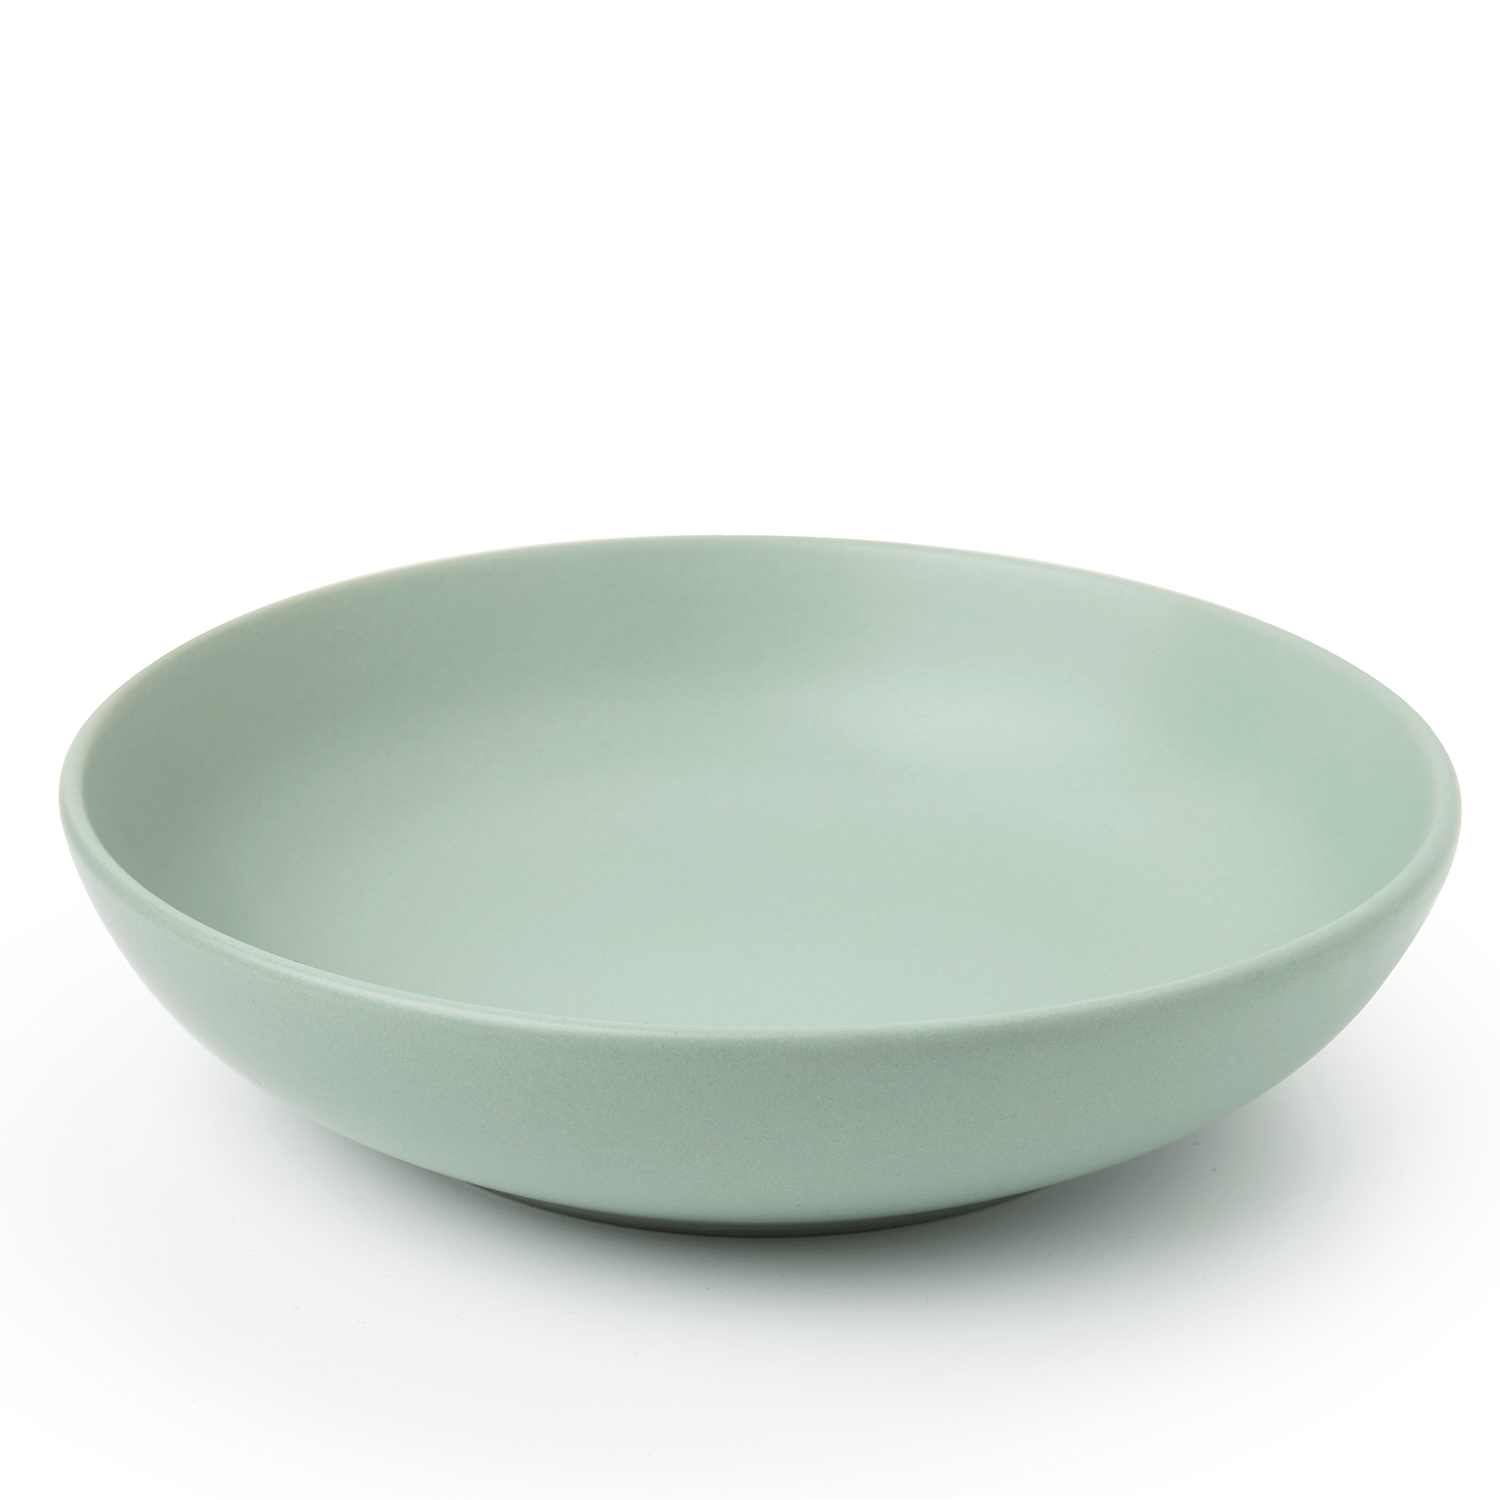 Kitchenware  -  Sabichi Sage Matt Pasta Bowl  -  50153575